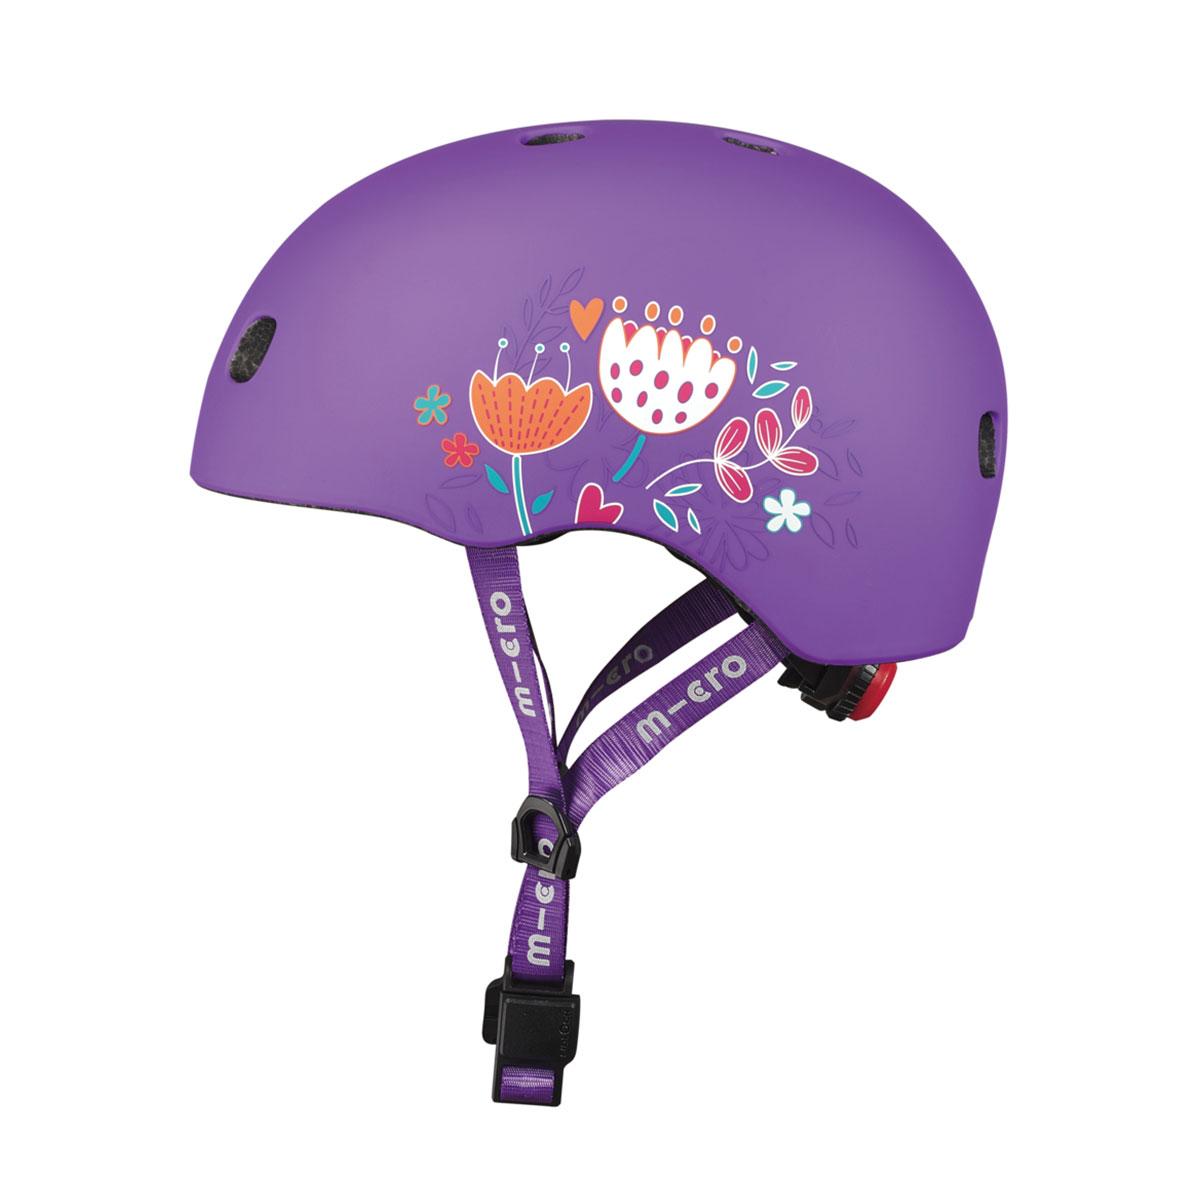 Захисний шолом micro — фіолетовий із квітами (48-53 cm, s)